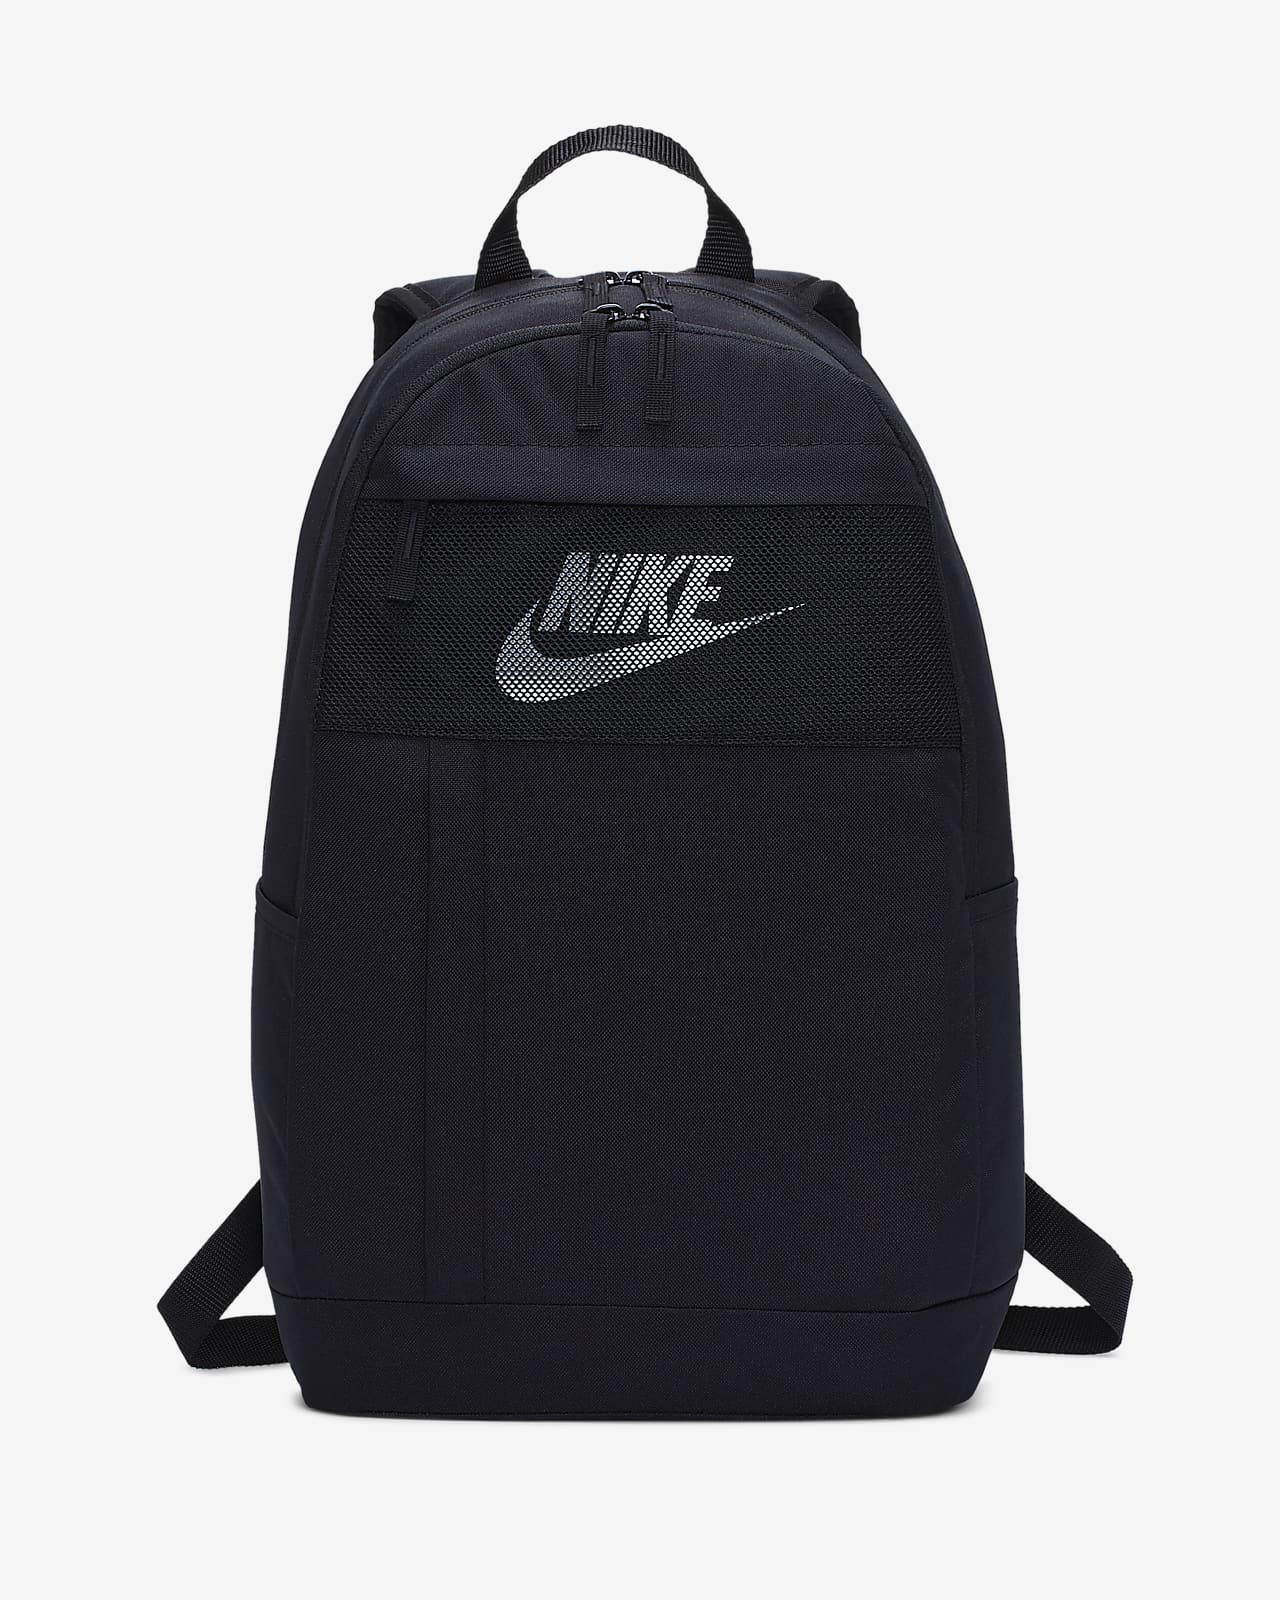 black and white nike backpack